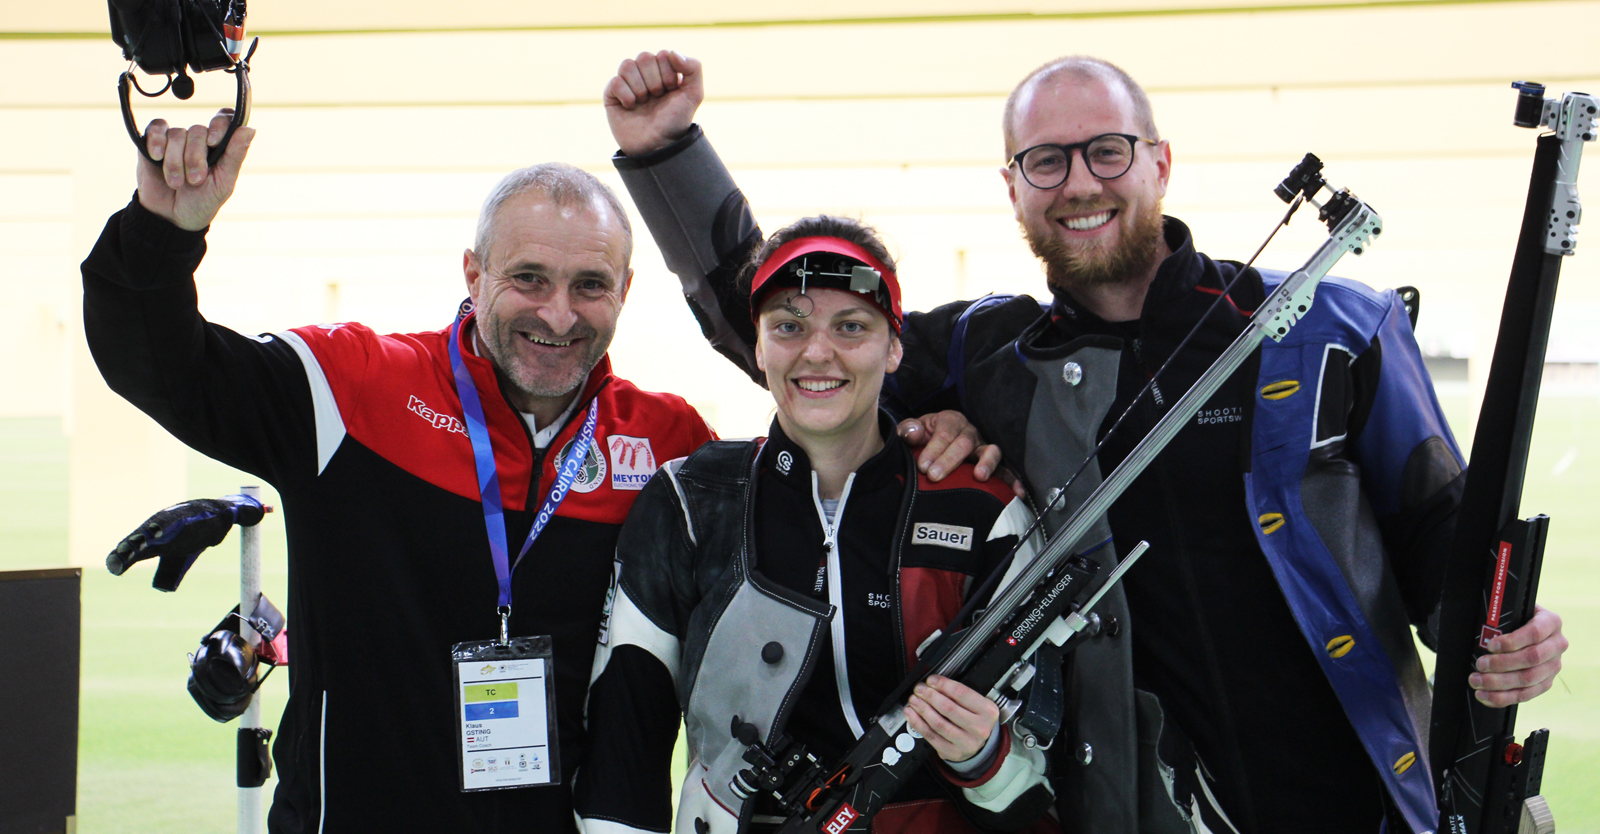 Jubel bei BronzemedaillengewinnerInnen Hofmann und Pickl mit 300m-Trainer Klaus Gstinig © Margit Melmer, ÖSB